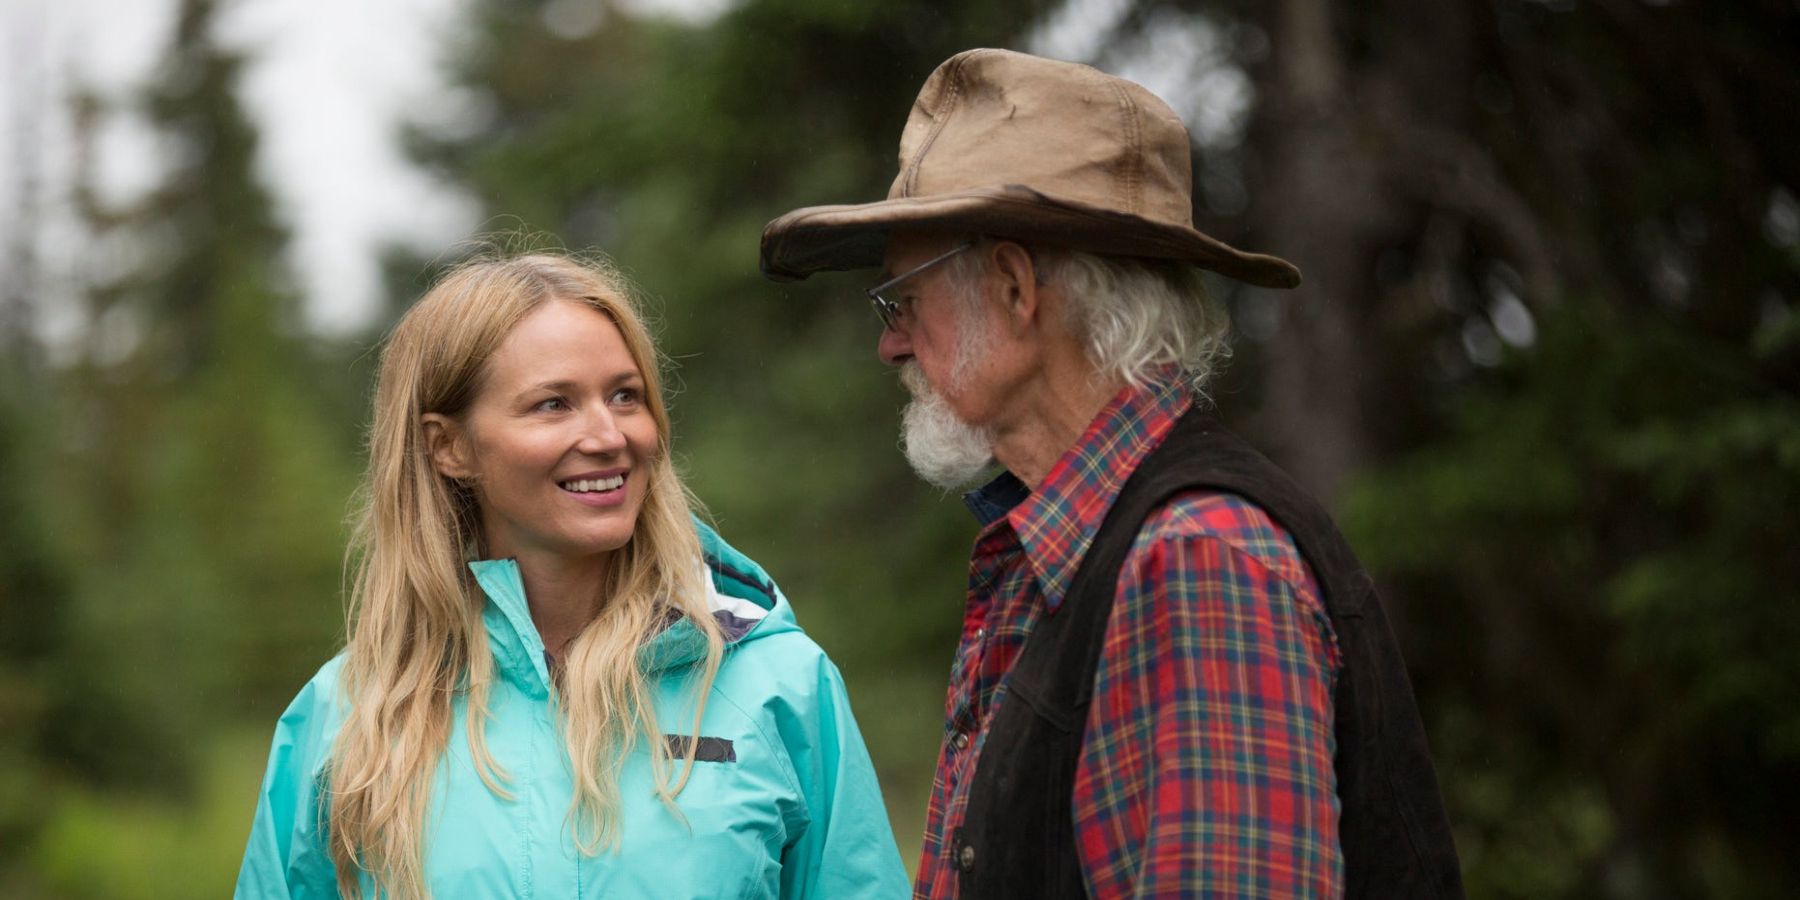 Alaska: The Last Frontier's Atz Kilcher and his daughter, Jewel.